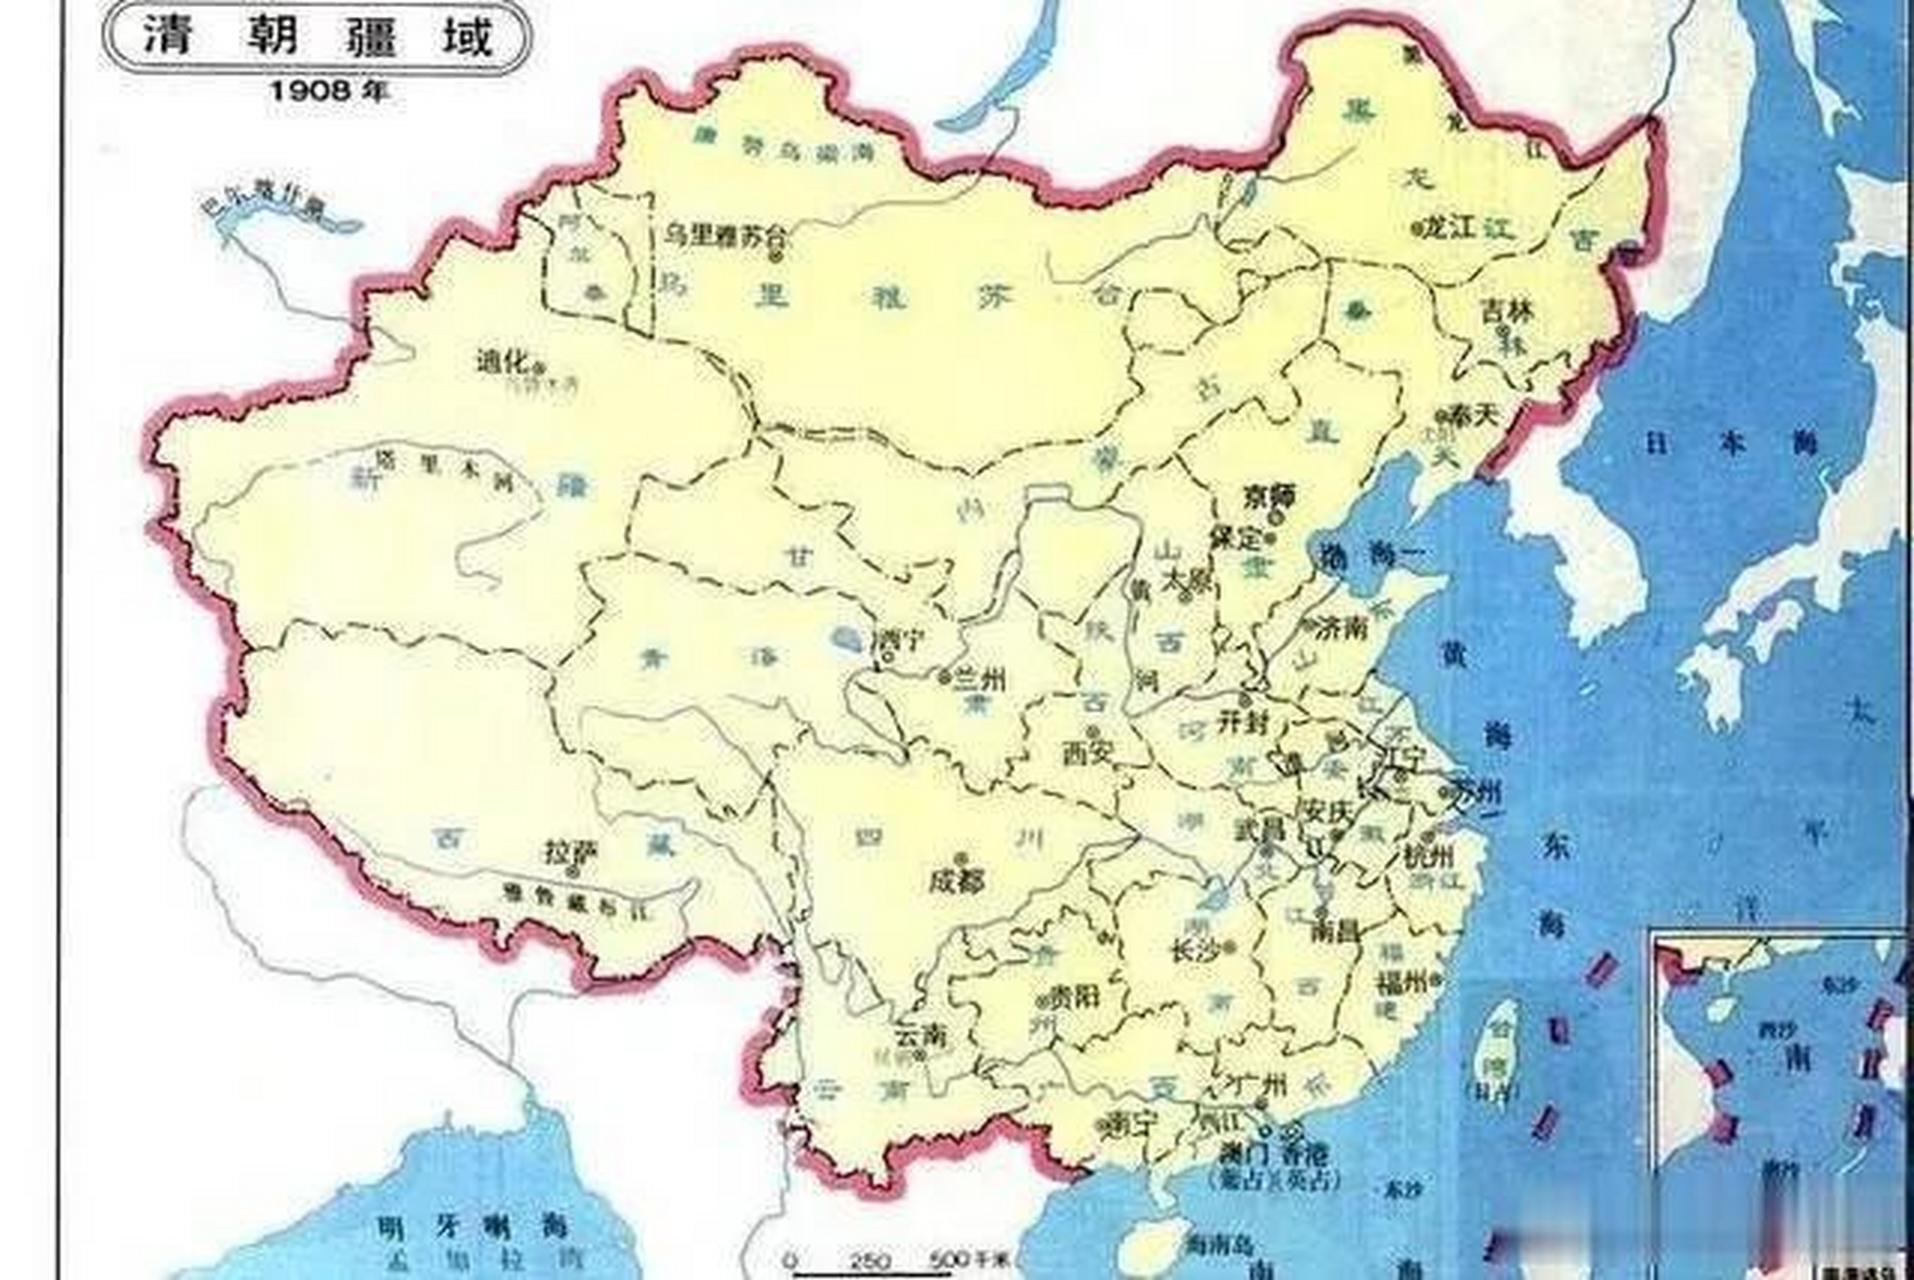 清朝疆域巅峰时期(1820年)版图与清朝灭亡前(1908年)时的版图对比